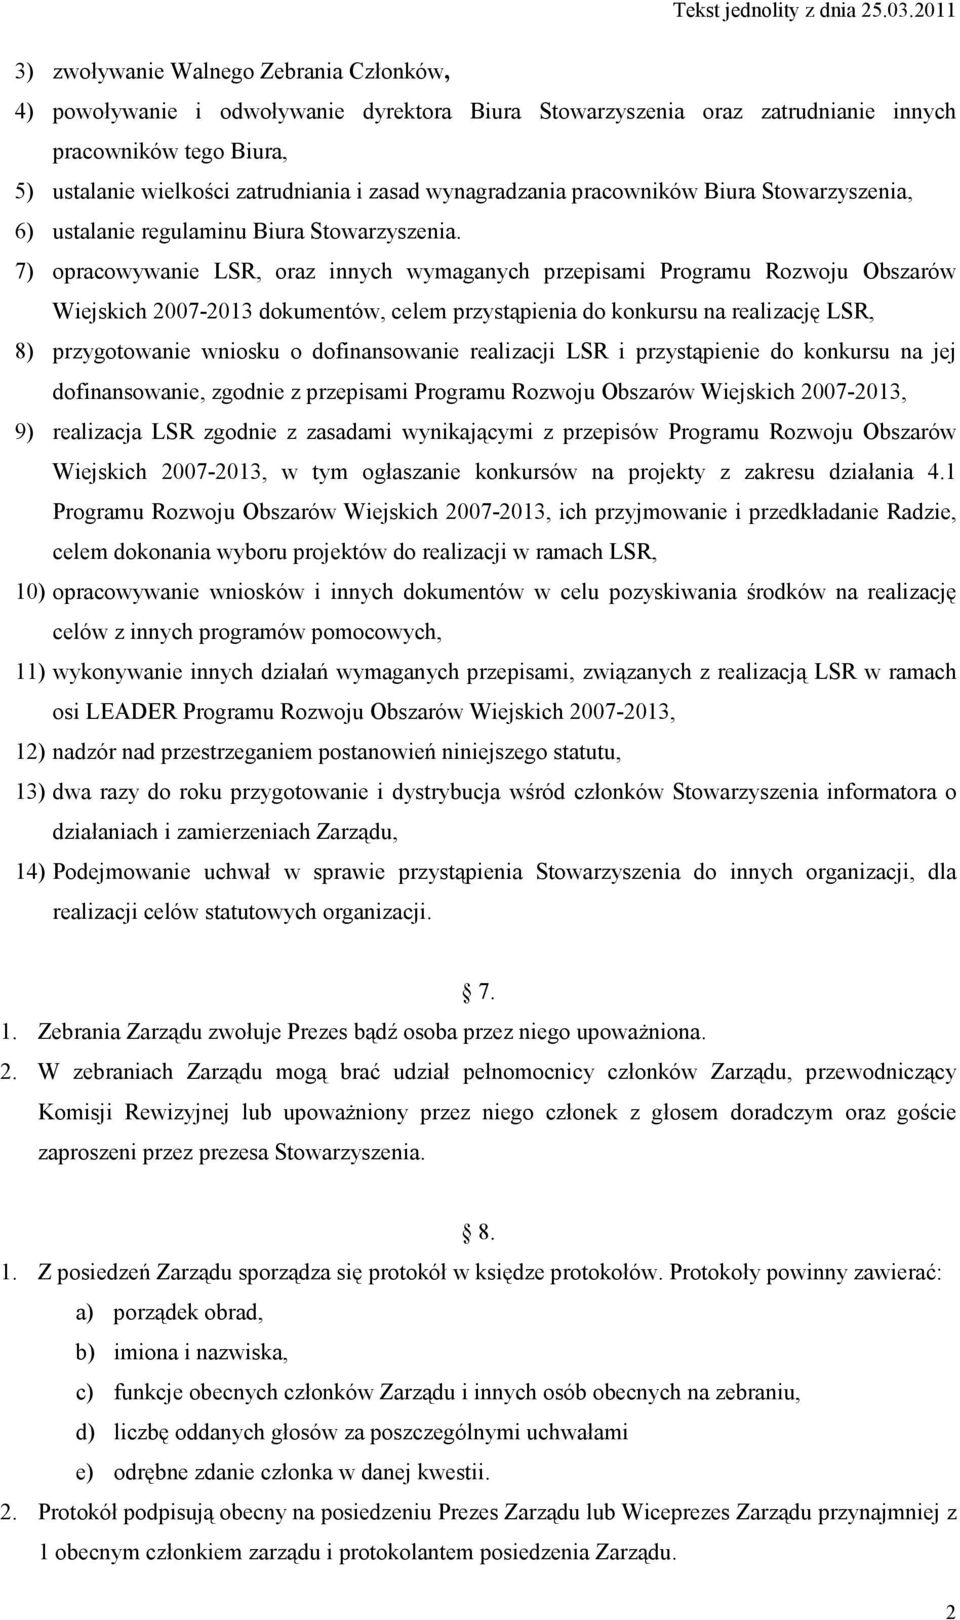 7) opracowywanie LSR, oraz innych wymaganych przepisami Programu Rozwoju Obszarów Wiejskich 2007-2013 dokumentów, celem przystąpienia do konkursu na realizację LSR, 8) przygotowanie wniosku o